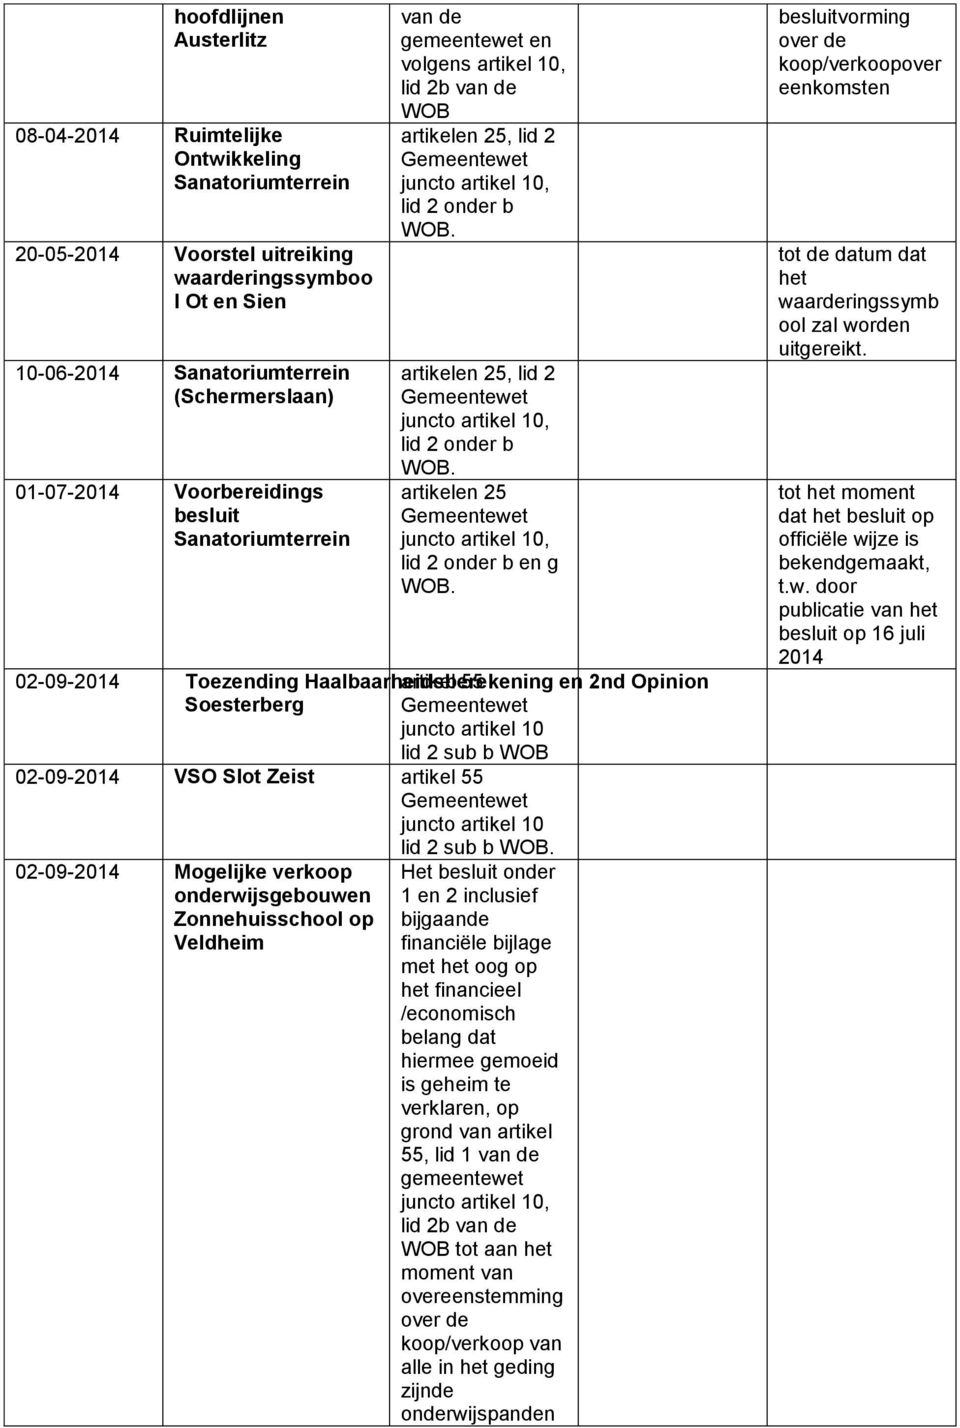 02-09-2014 Toezending Haalbaarheidsberekening artikel 55 en 2nd Opinion Soesterberg 02-09-2014 VSO Slot Zeist artikel 55.